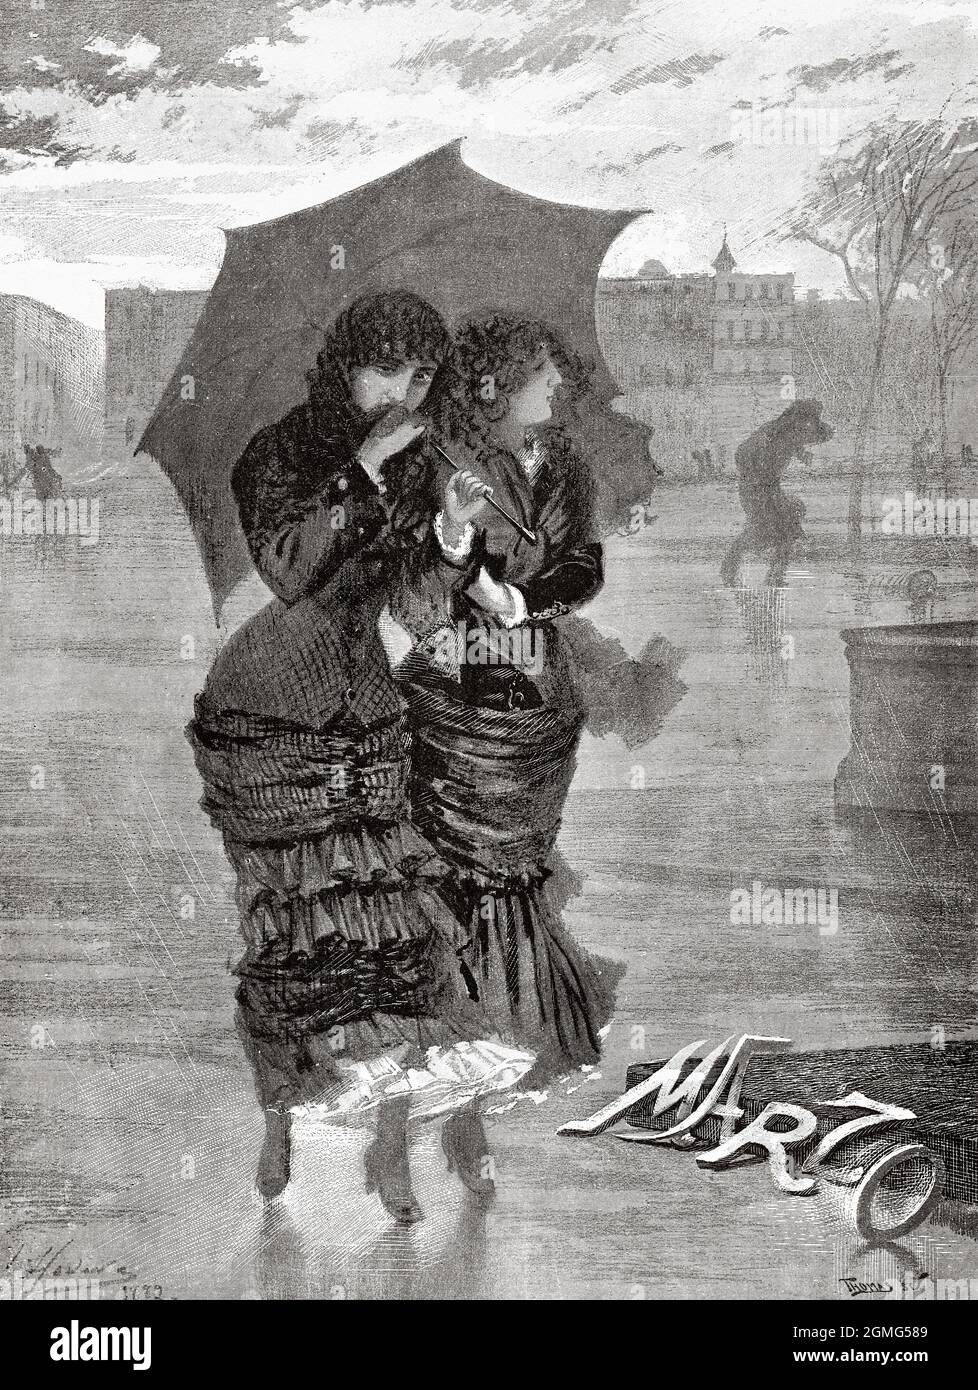 Allégorie du mois de mars, deux femmes marchant sous la pluie avec un  parapluie par Josep Llovera i Bufill (1846-1896) était un peintre catalan  et illustrateur de journaux. Ancienne illustration gravée du